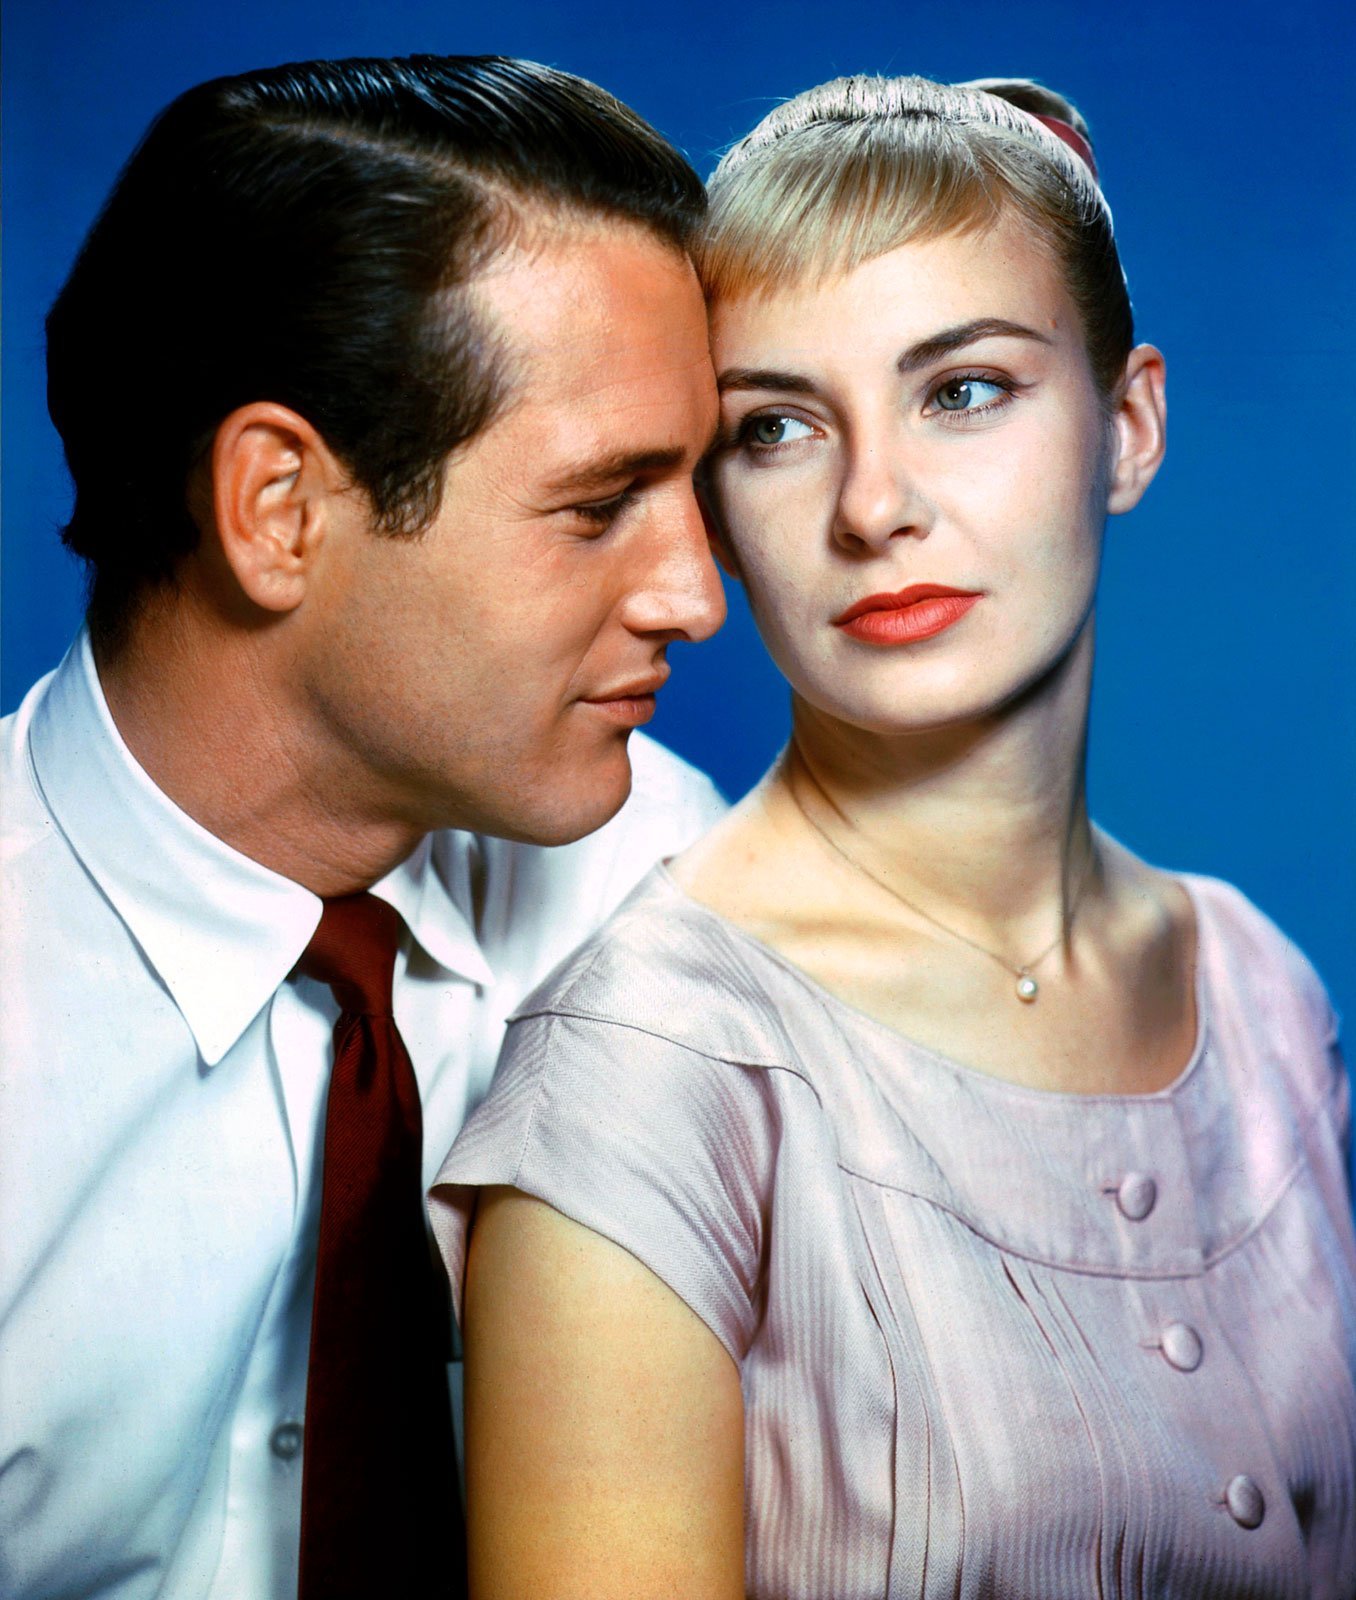 Paul Newman and Joanne Woodward. | Source: Wikimedia